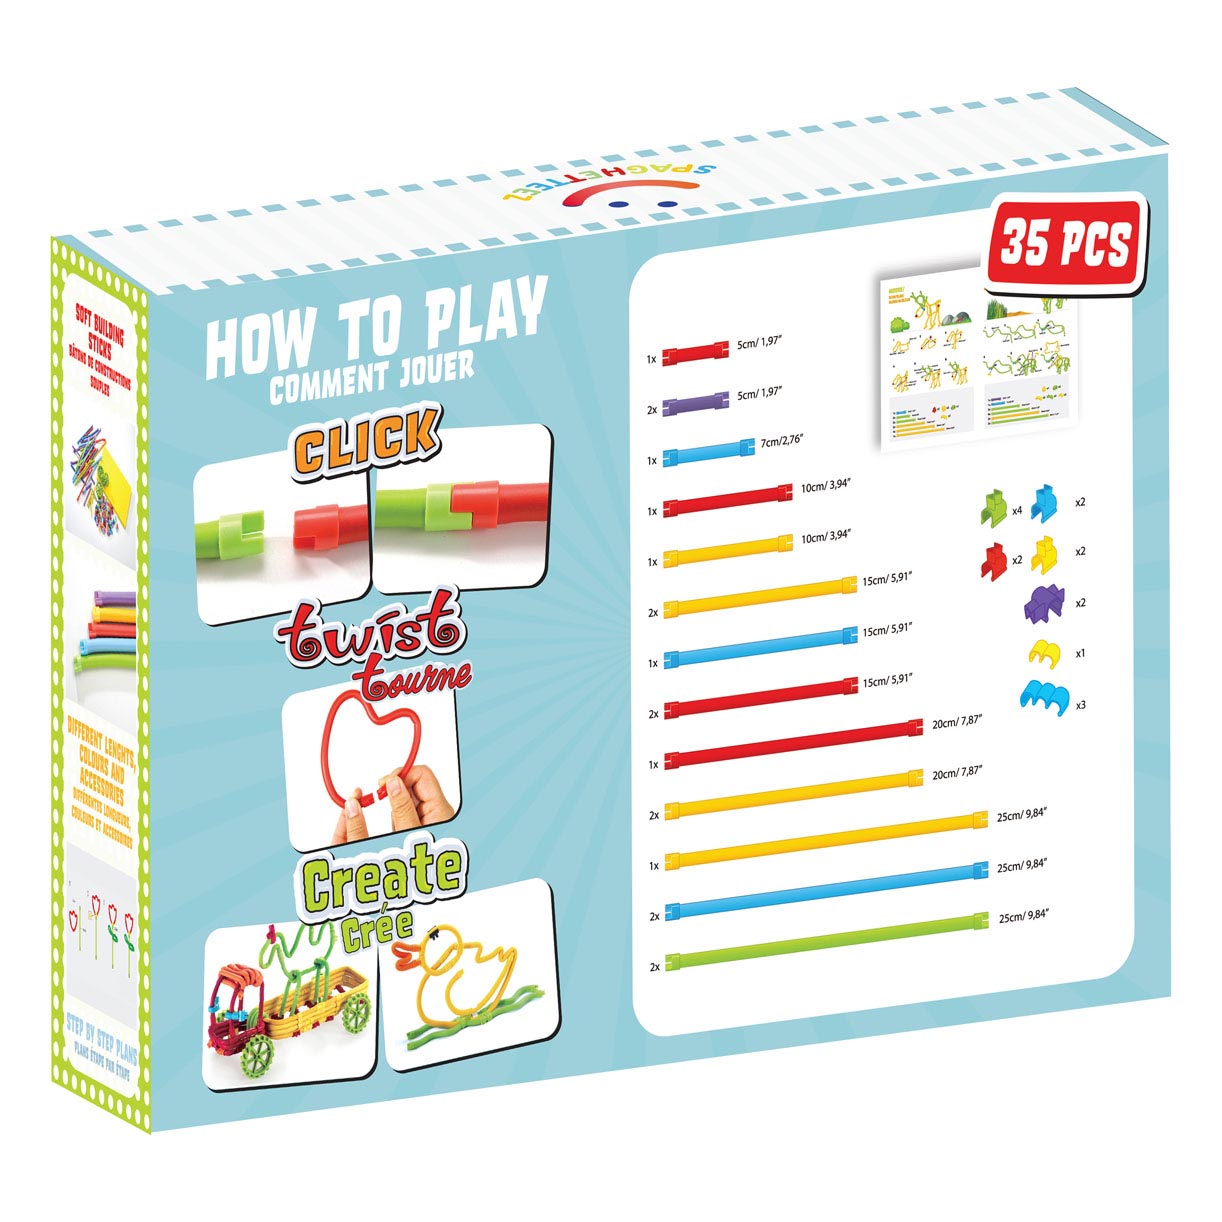 Kit de bricolage Spaghetteez pour enfants à partir de 4 ans, speelgoed  éducatif pour